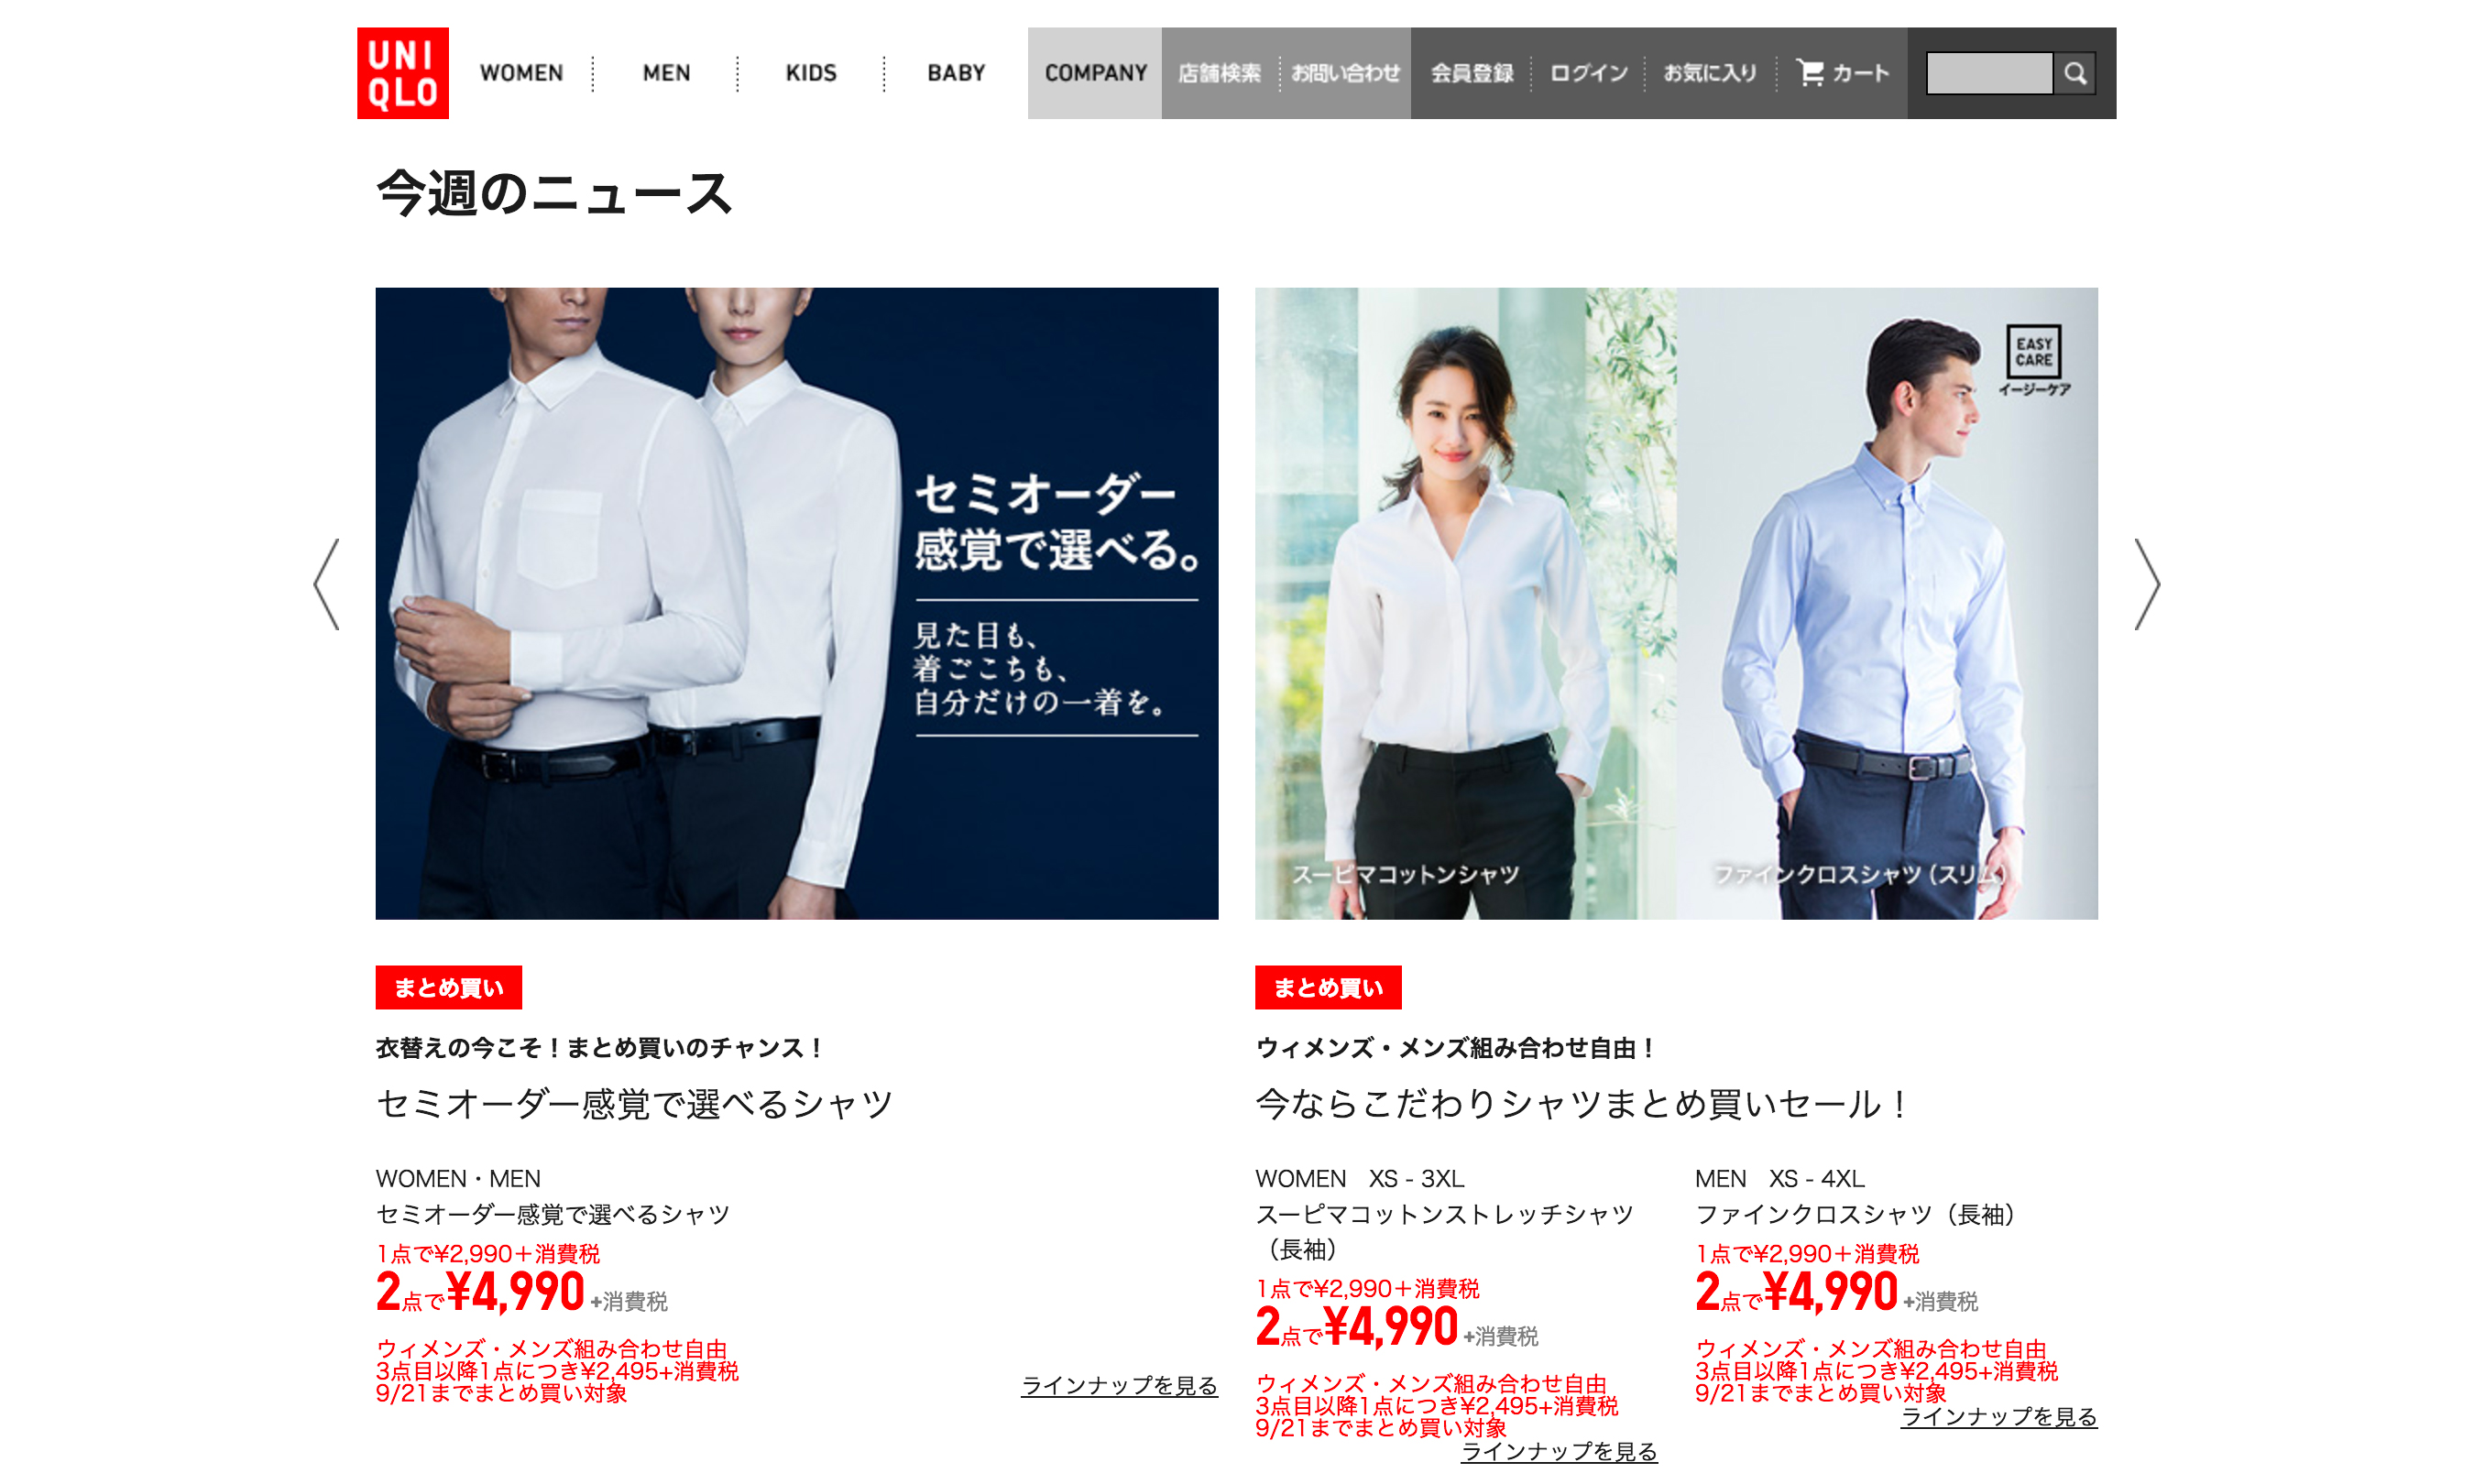 优衣库与极优在日本推出 “后支付” 新模式